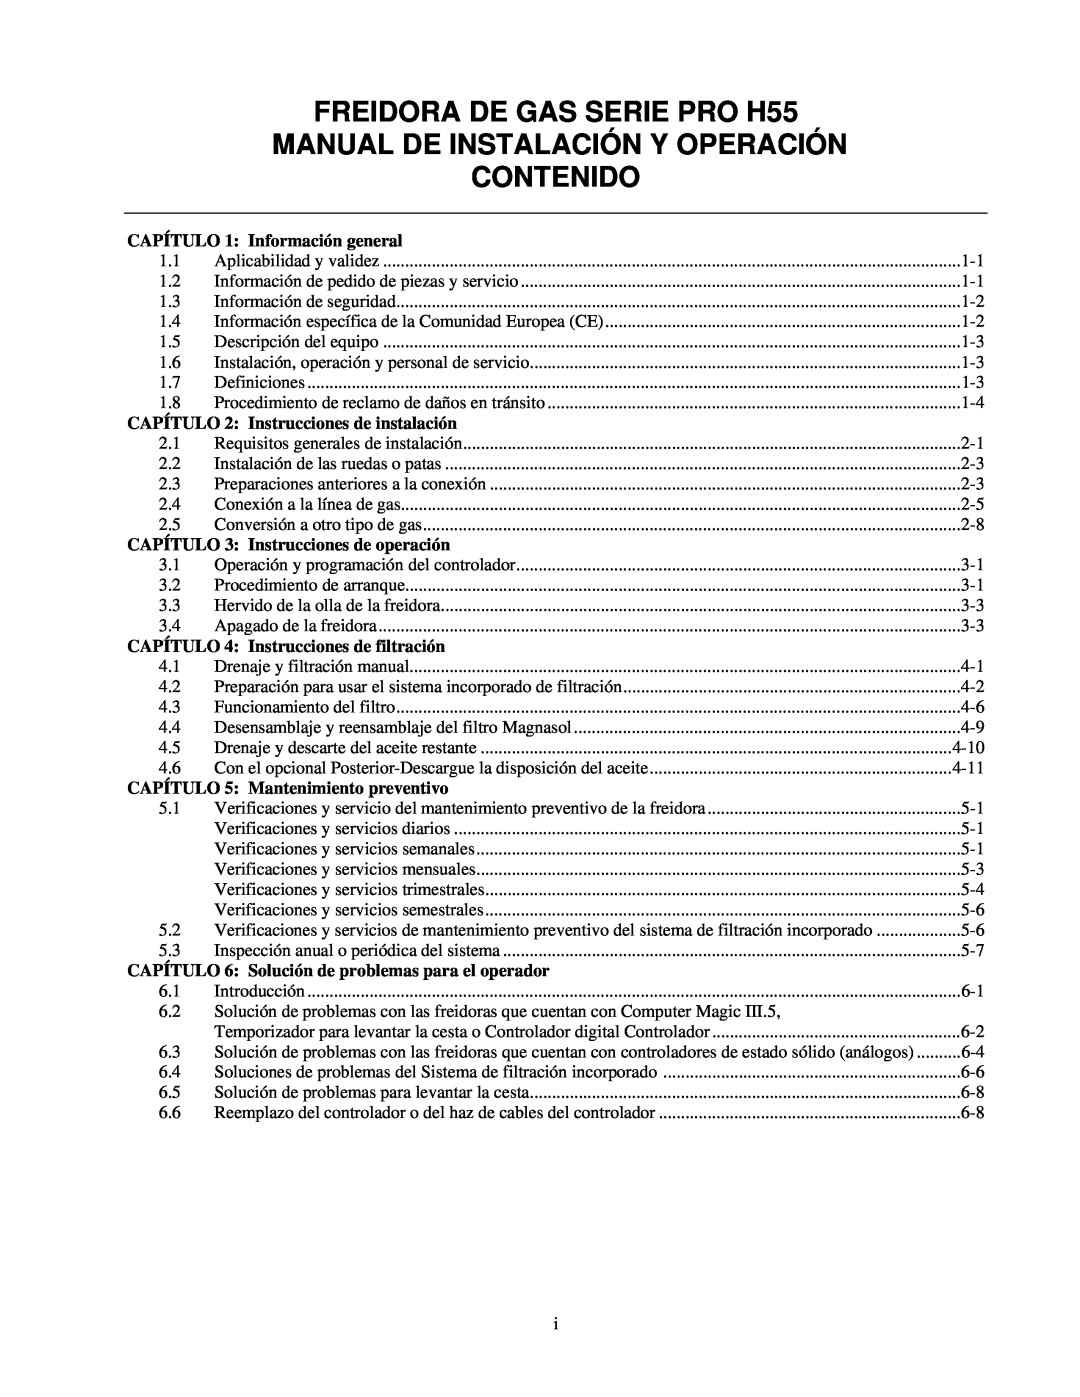 Frymaster FREIDORA DE GAS SERIE PRO H55, Manual De Instalación Y Operación Contenido, CAPÍTULO 1 Información general 